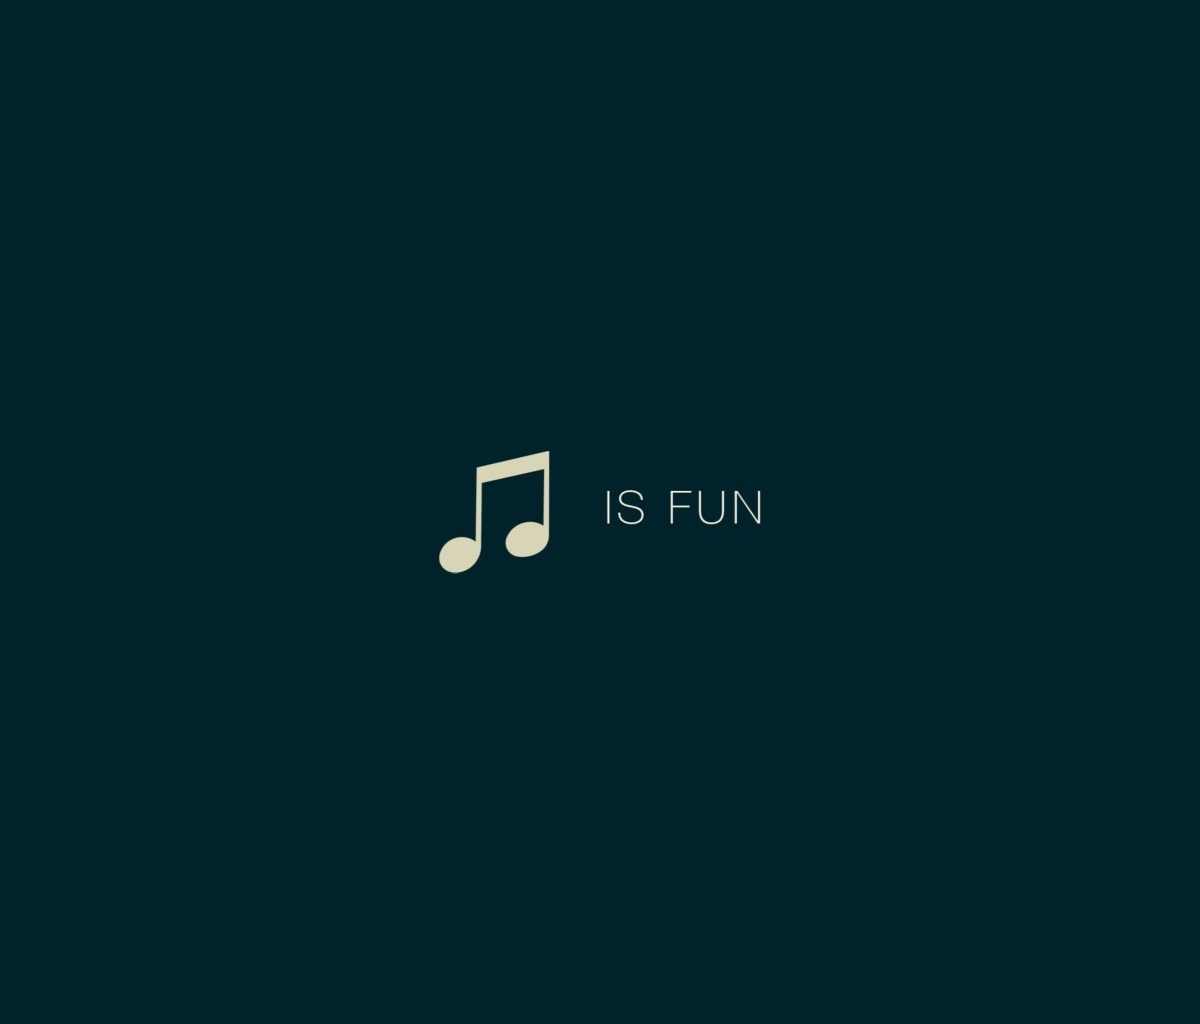 Das Music Is Fun Wallpaper 1200x1024